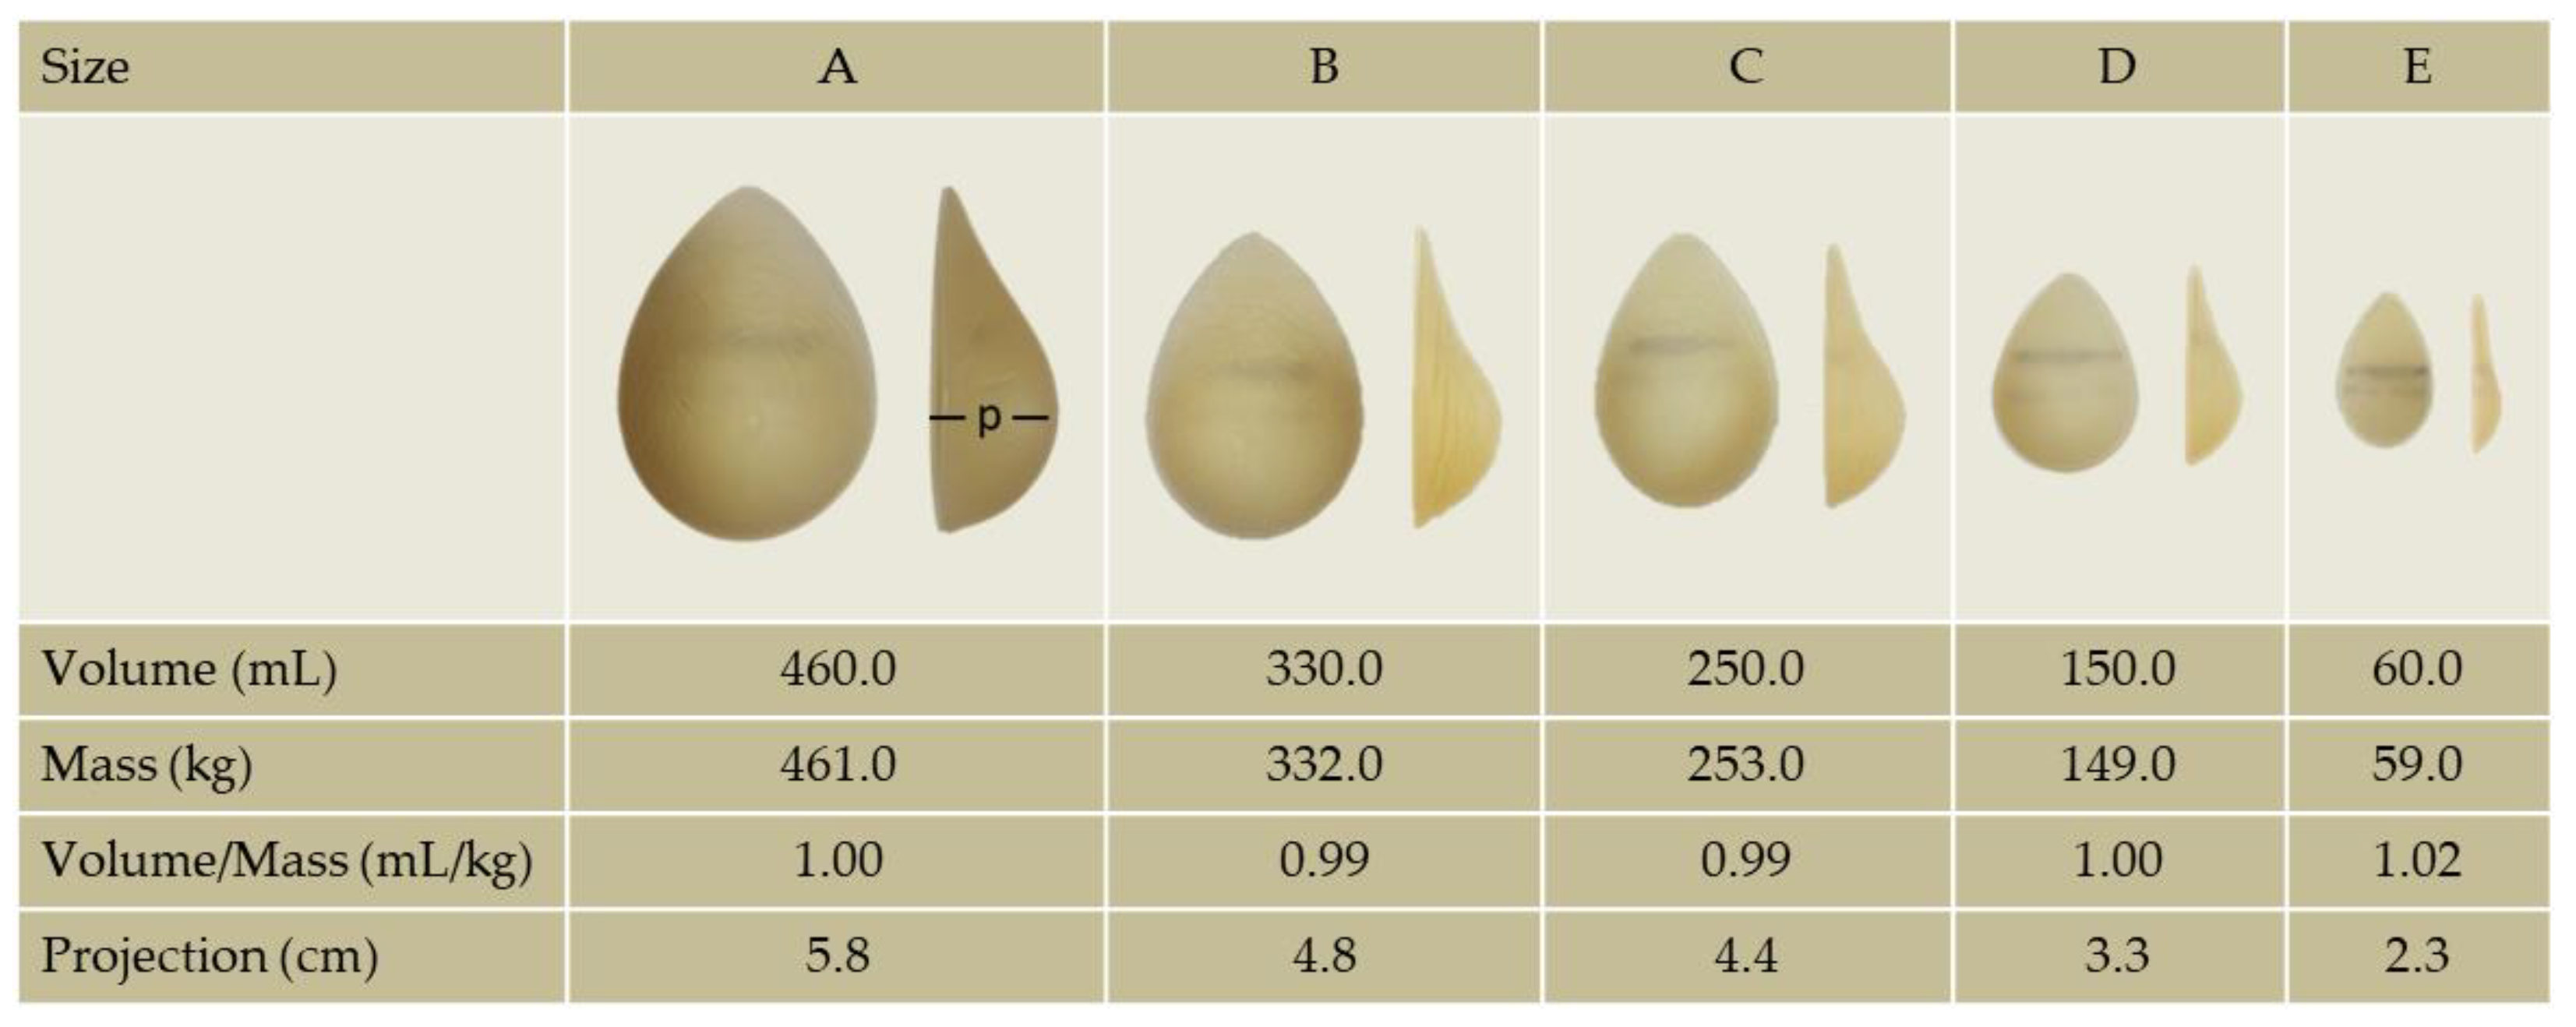 Breast size distribution comparison. a): The breast diameter